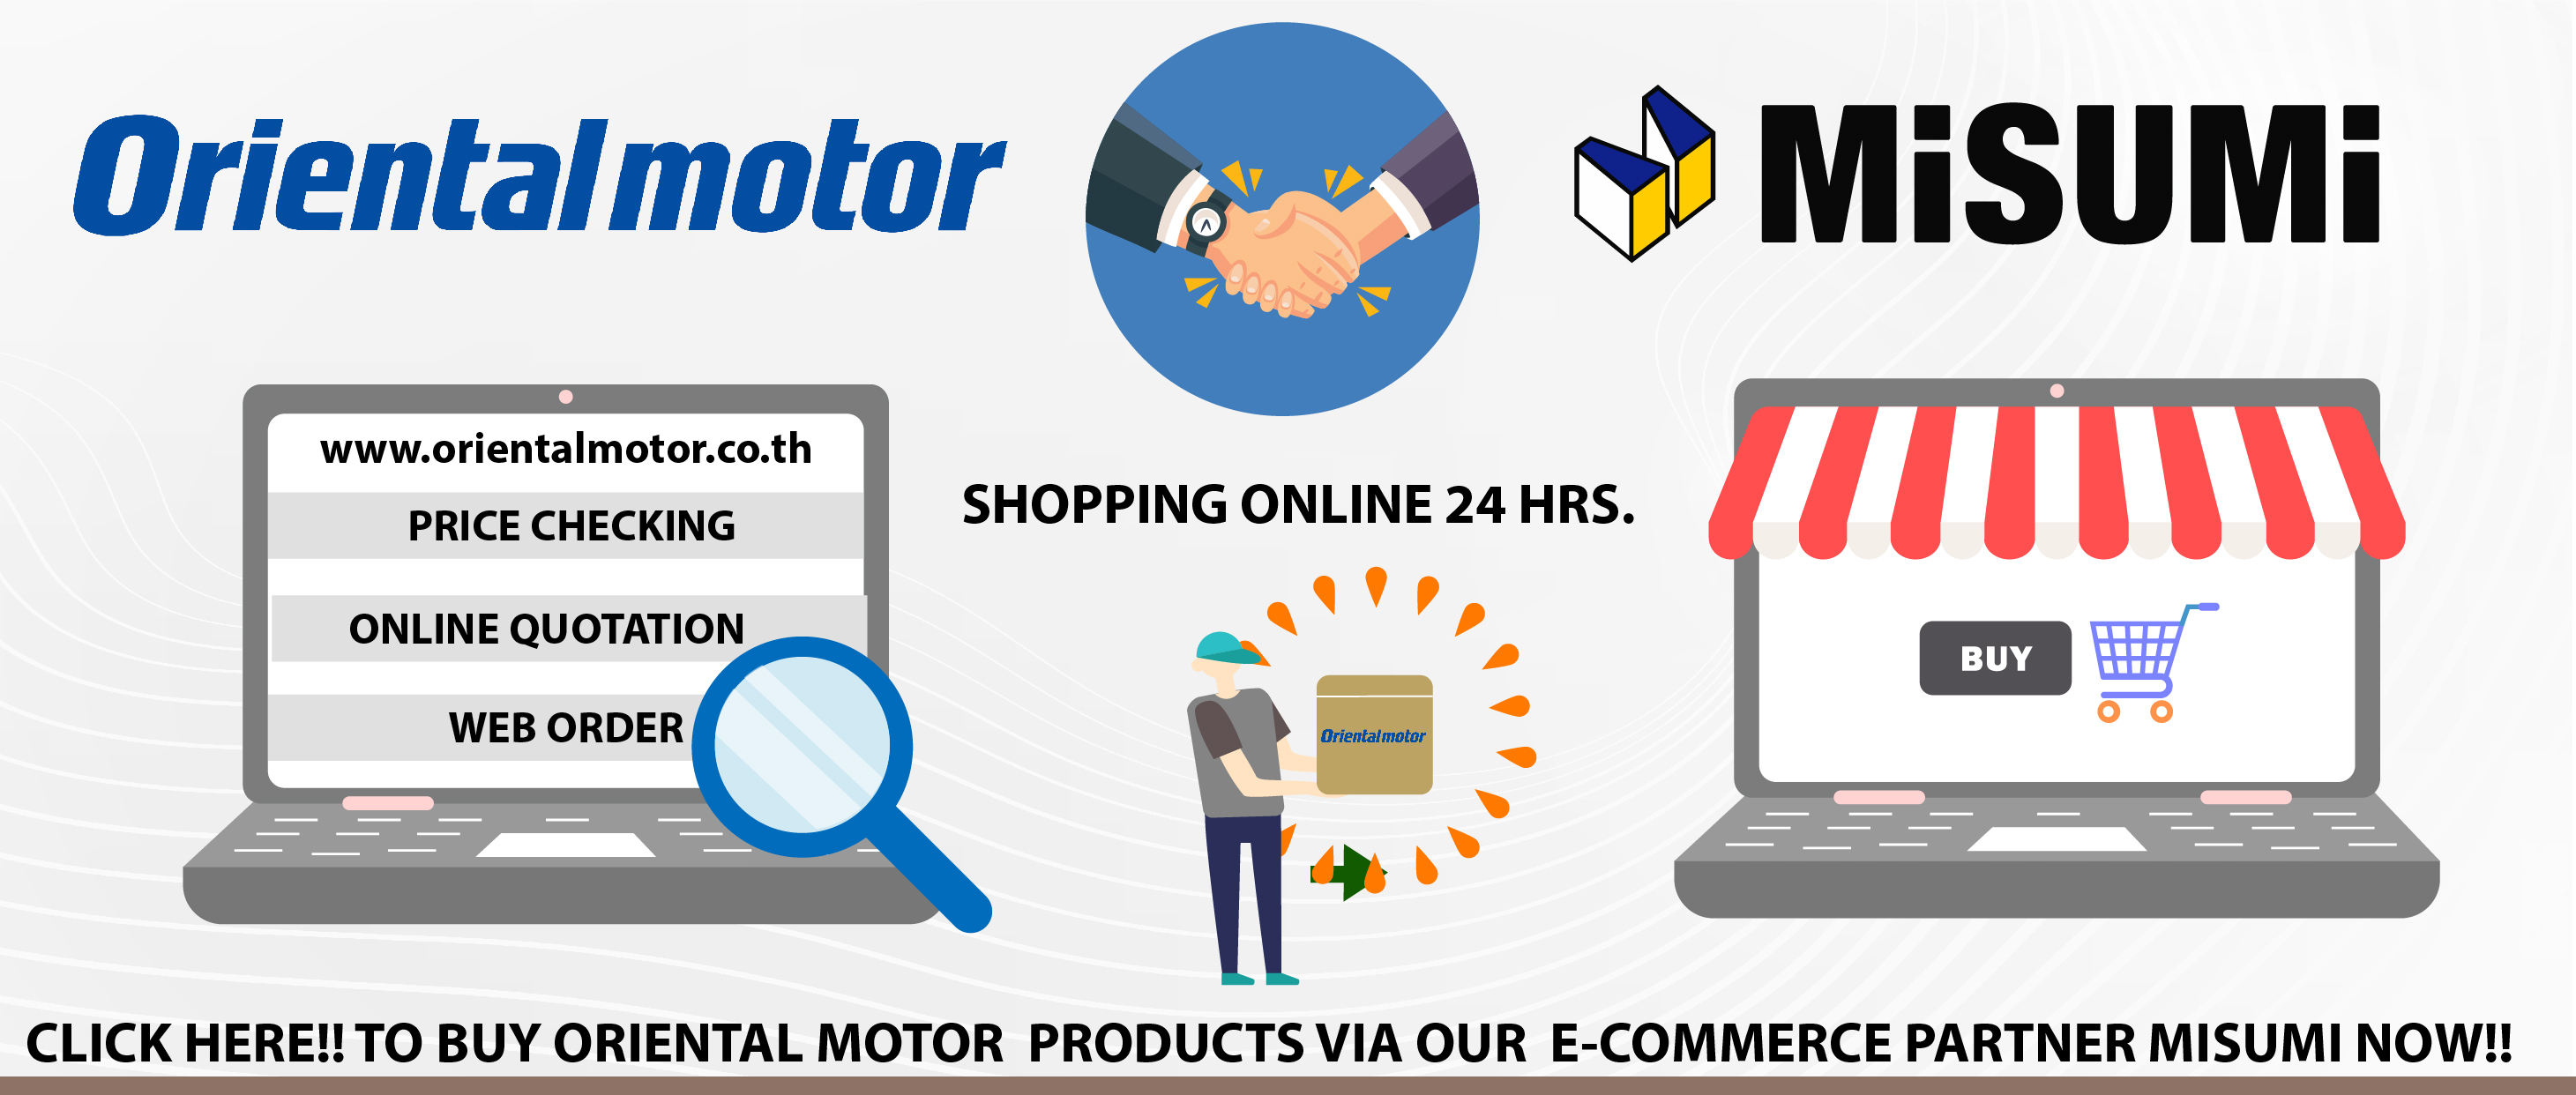 Misumi E-commerce partner